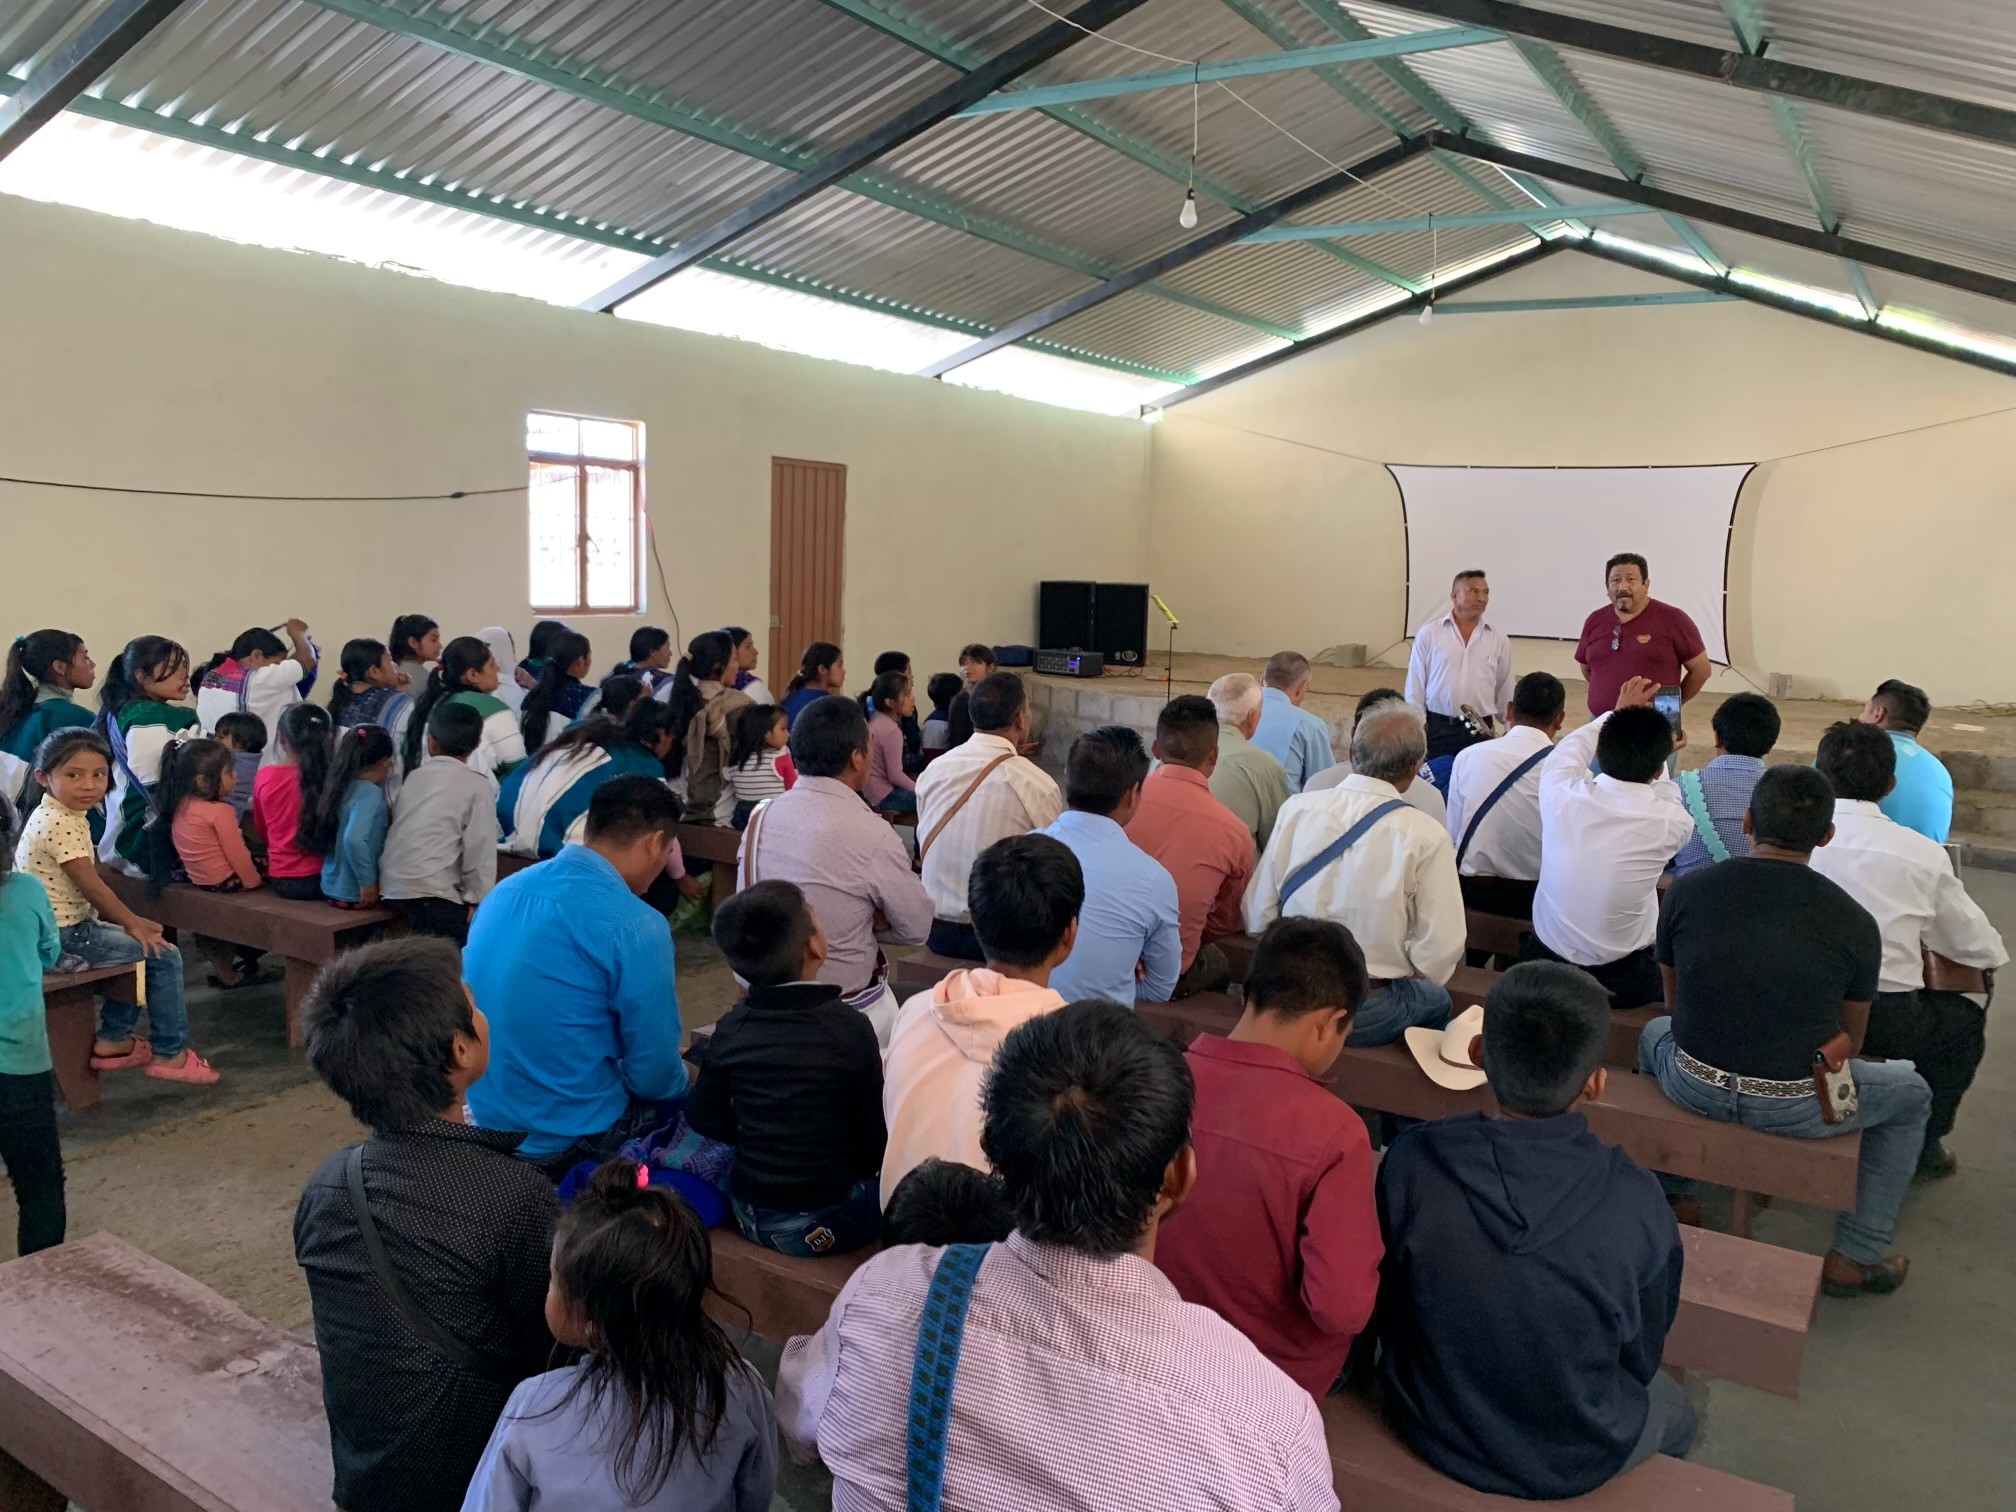 Cottonwood Creek Church - Chiapas Mexico Mission Trip